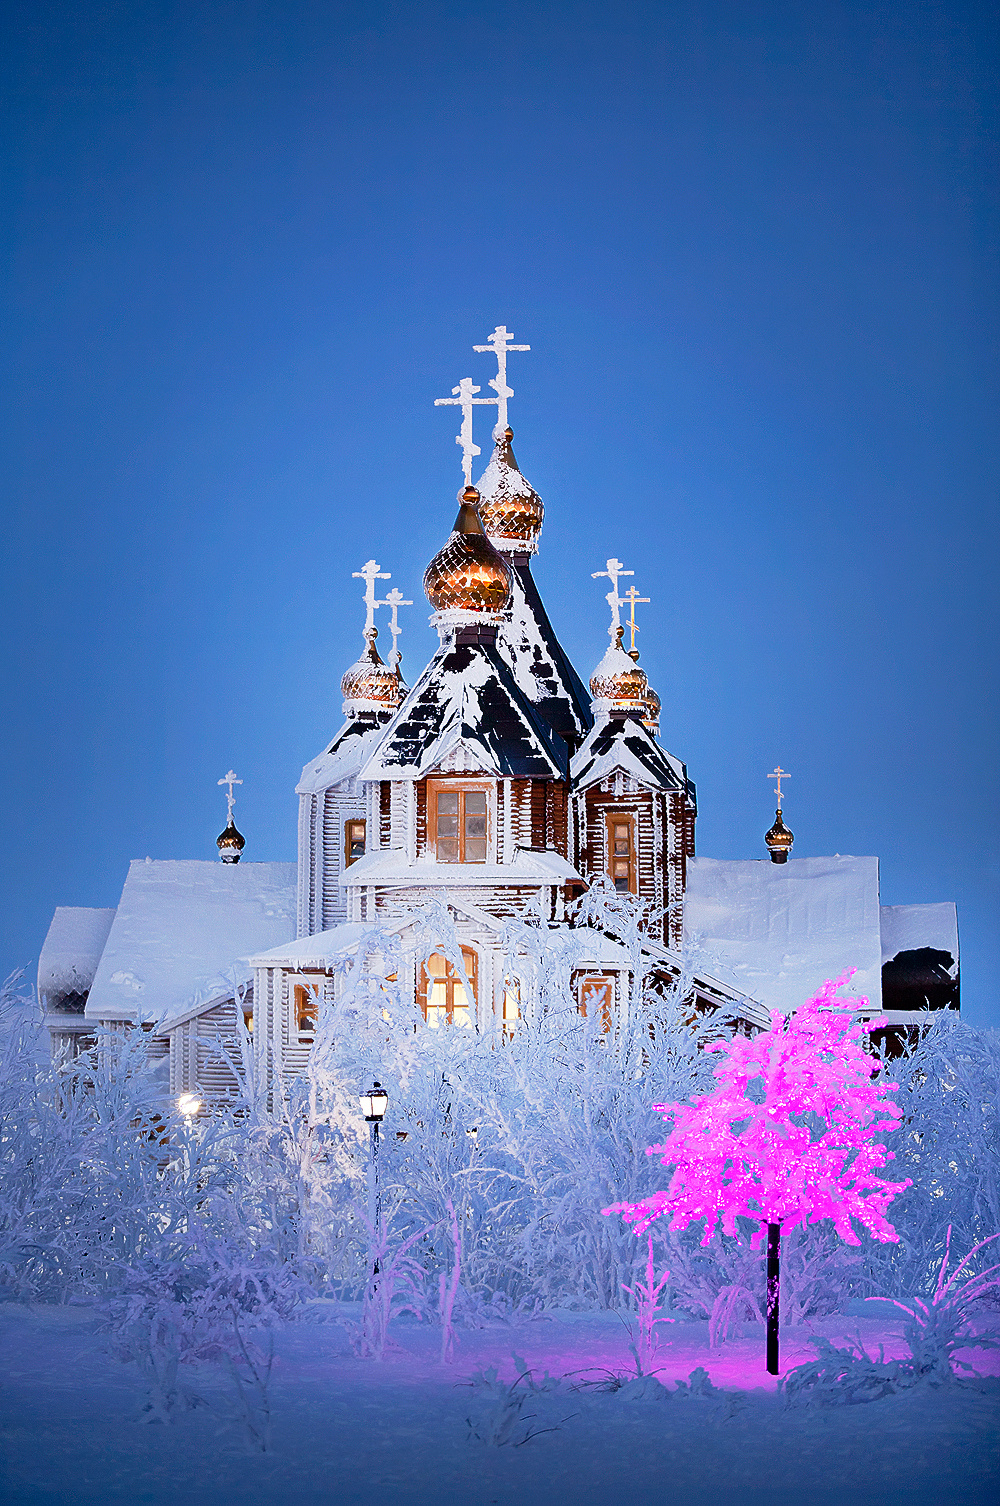 Вечерняя Чукотка Анадырь Храм Святой Живоначальной Троицы зима изморозь иней вечер